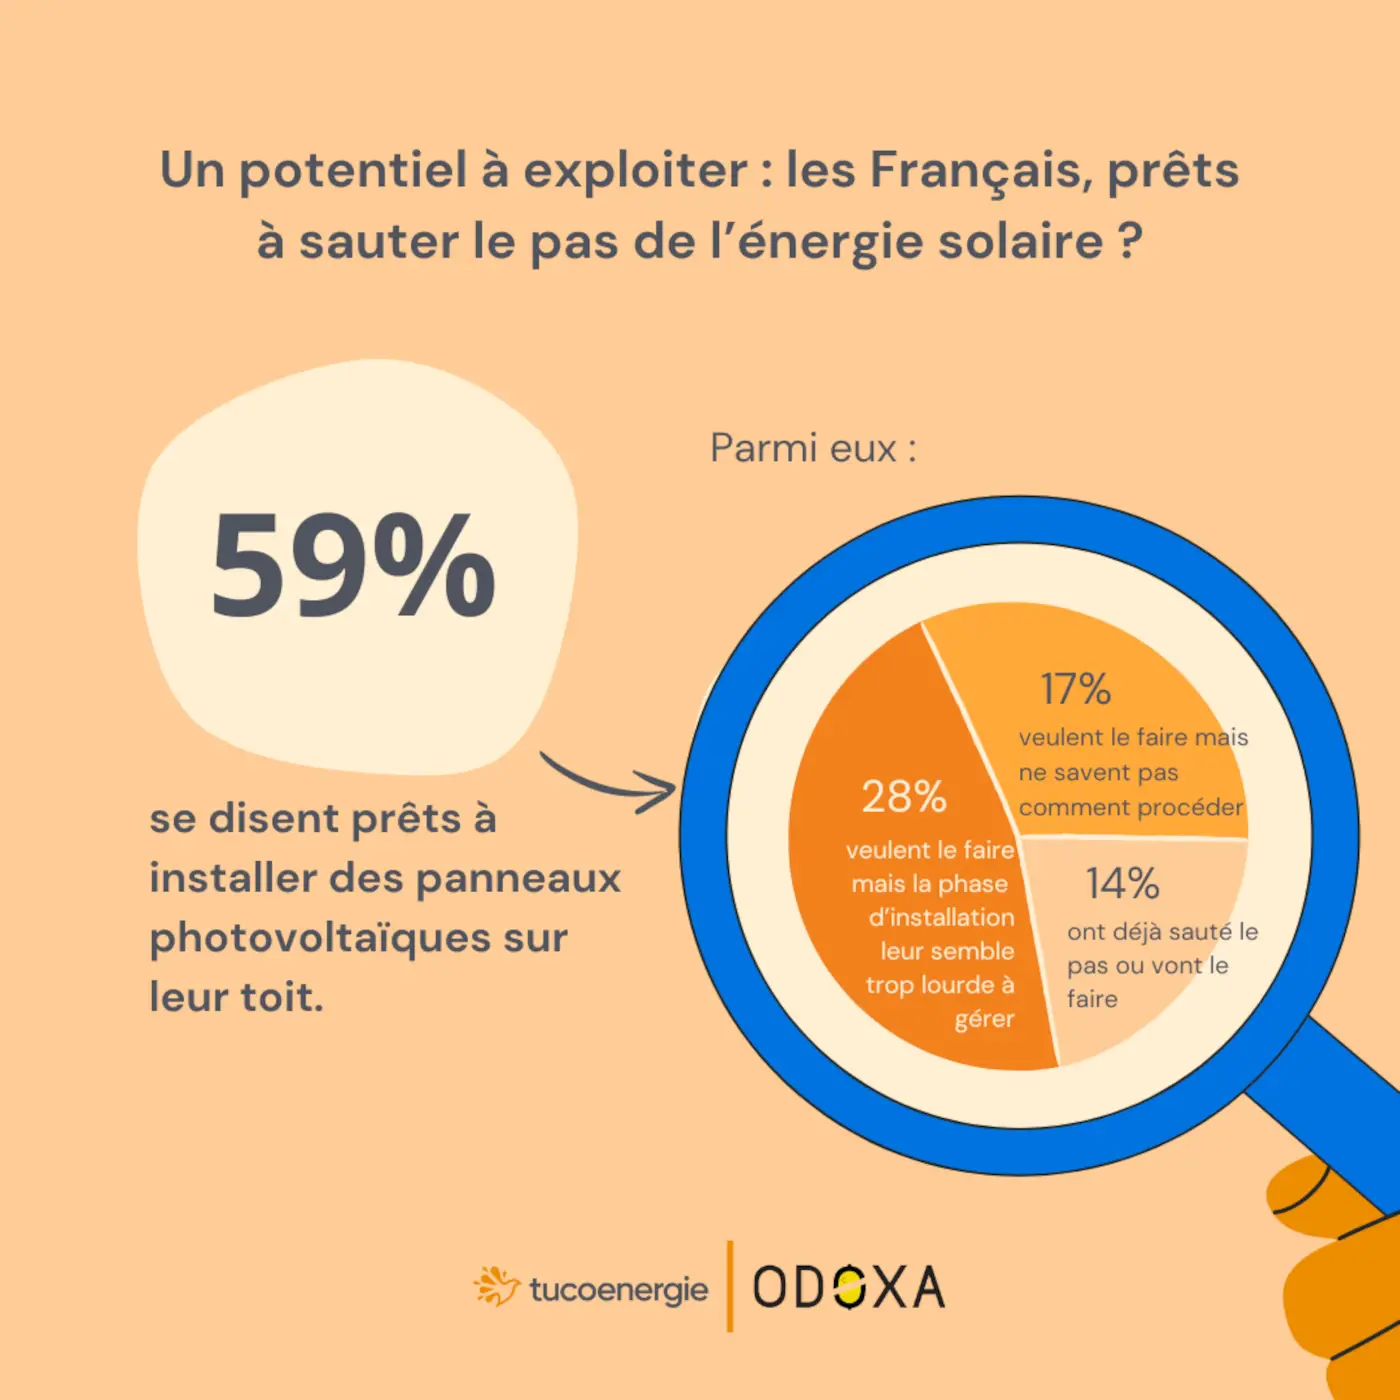 59% des Français se disent prêts à installer des panneaux solaires sur leur toit.